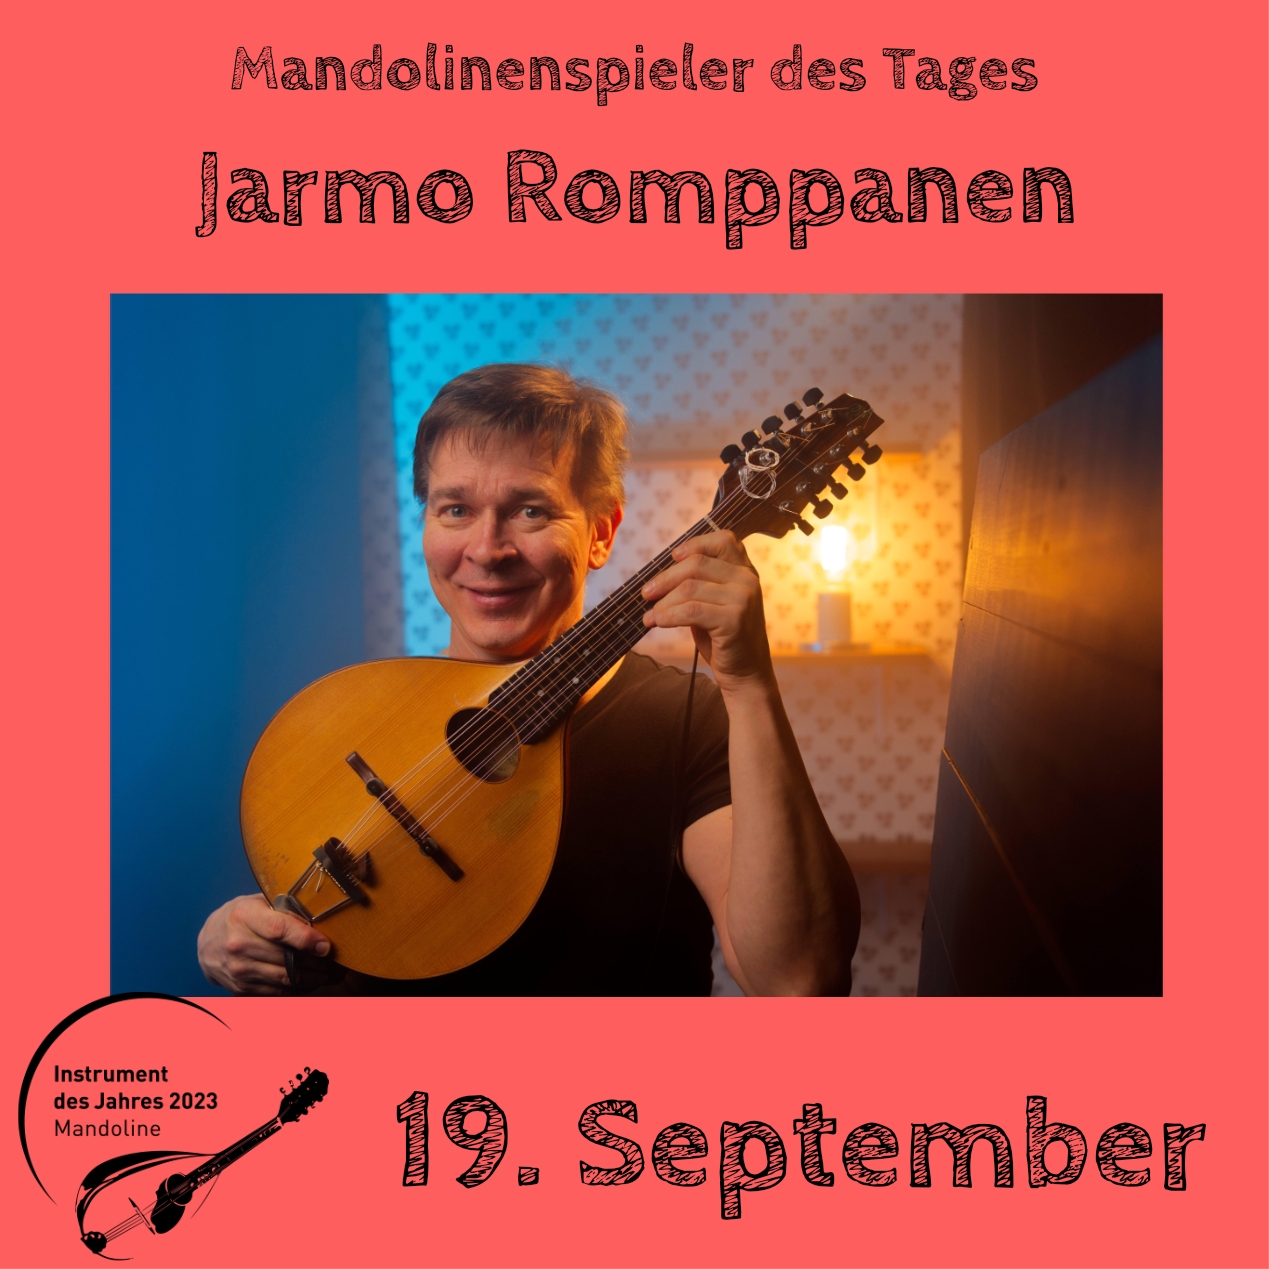 19. September - Jarmo Romppanen Mandoline Instrument des Jahres 2023 Mandolinenspieler Mandolinenspielerin des Tages